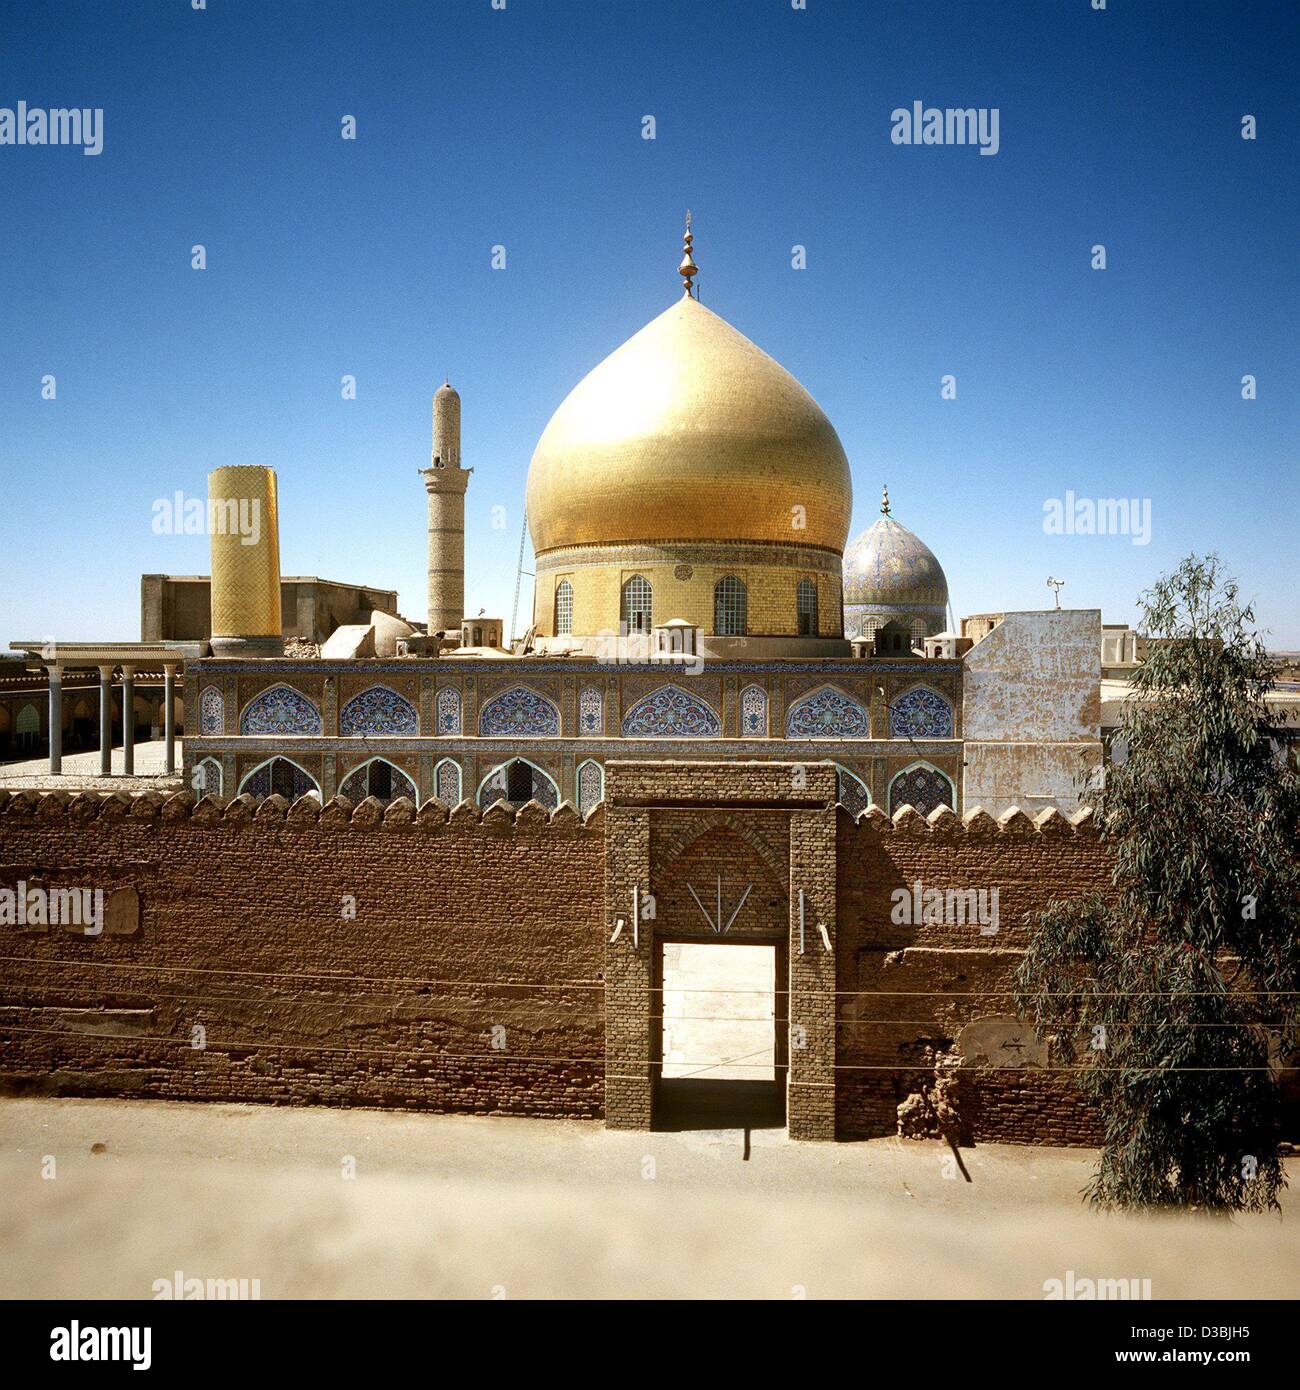 (Dpa-Dateien) - ein Blick über die goldene Kuppel der Askari Moschee in Samarra, Irak (undatiert Filer). Es hält die Gräber der beiden Imame, 10., Ali l-Hadi und der 11. Hadi al-Askari. Samarra befindet sich im zentralen Irak auf halbem Weg zwischen Bagdad und Mosul. Stockfoto